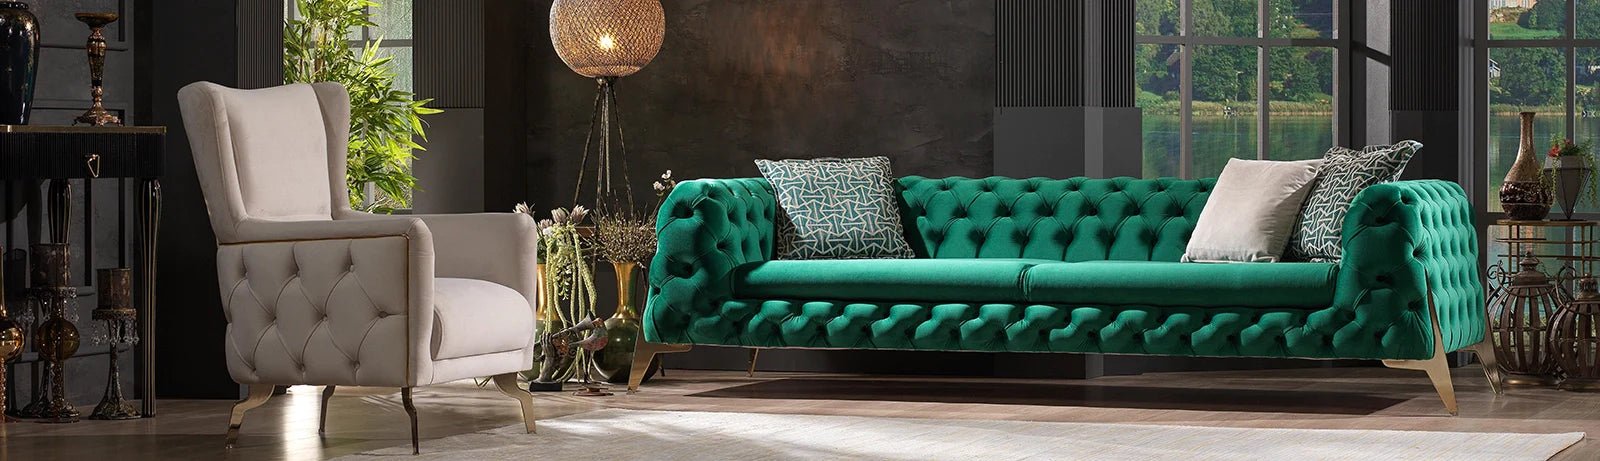 Italian Furniture - Berre Furniture